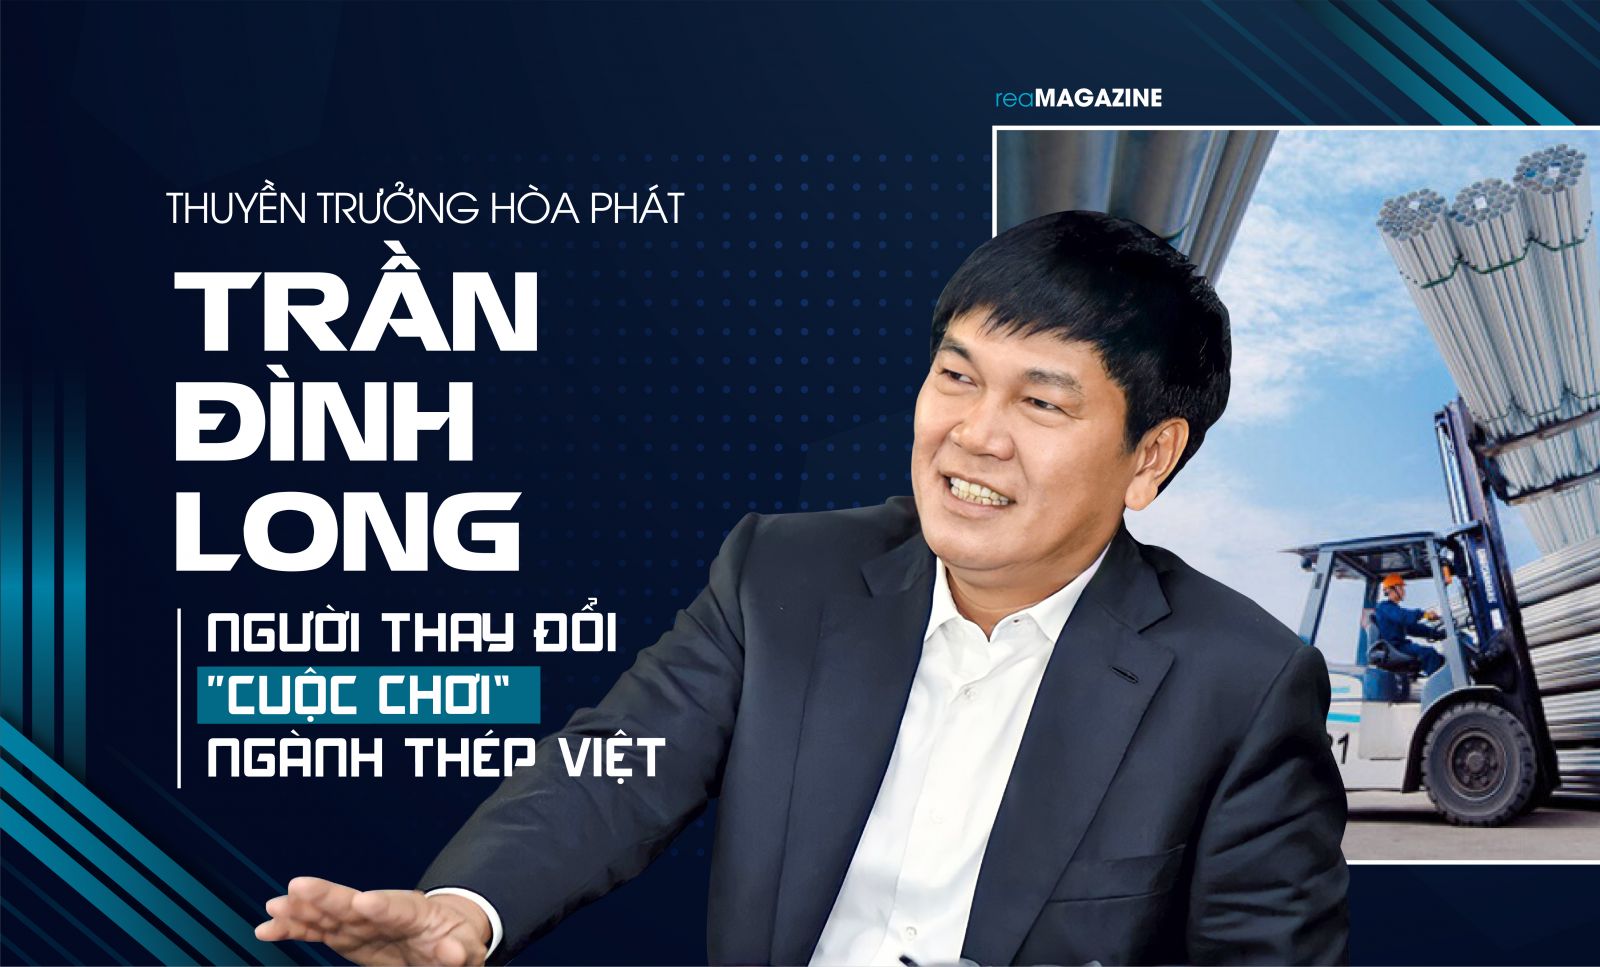 Thuyền trưởng Hòa Phát Trần Đình Long - Người thay đổi “cuộc chơi” ngành thép Việt